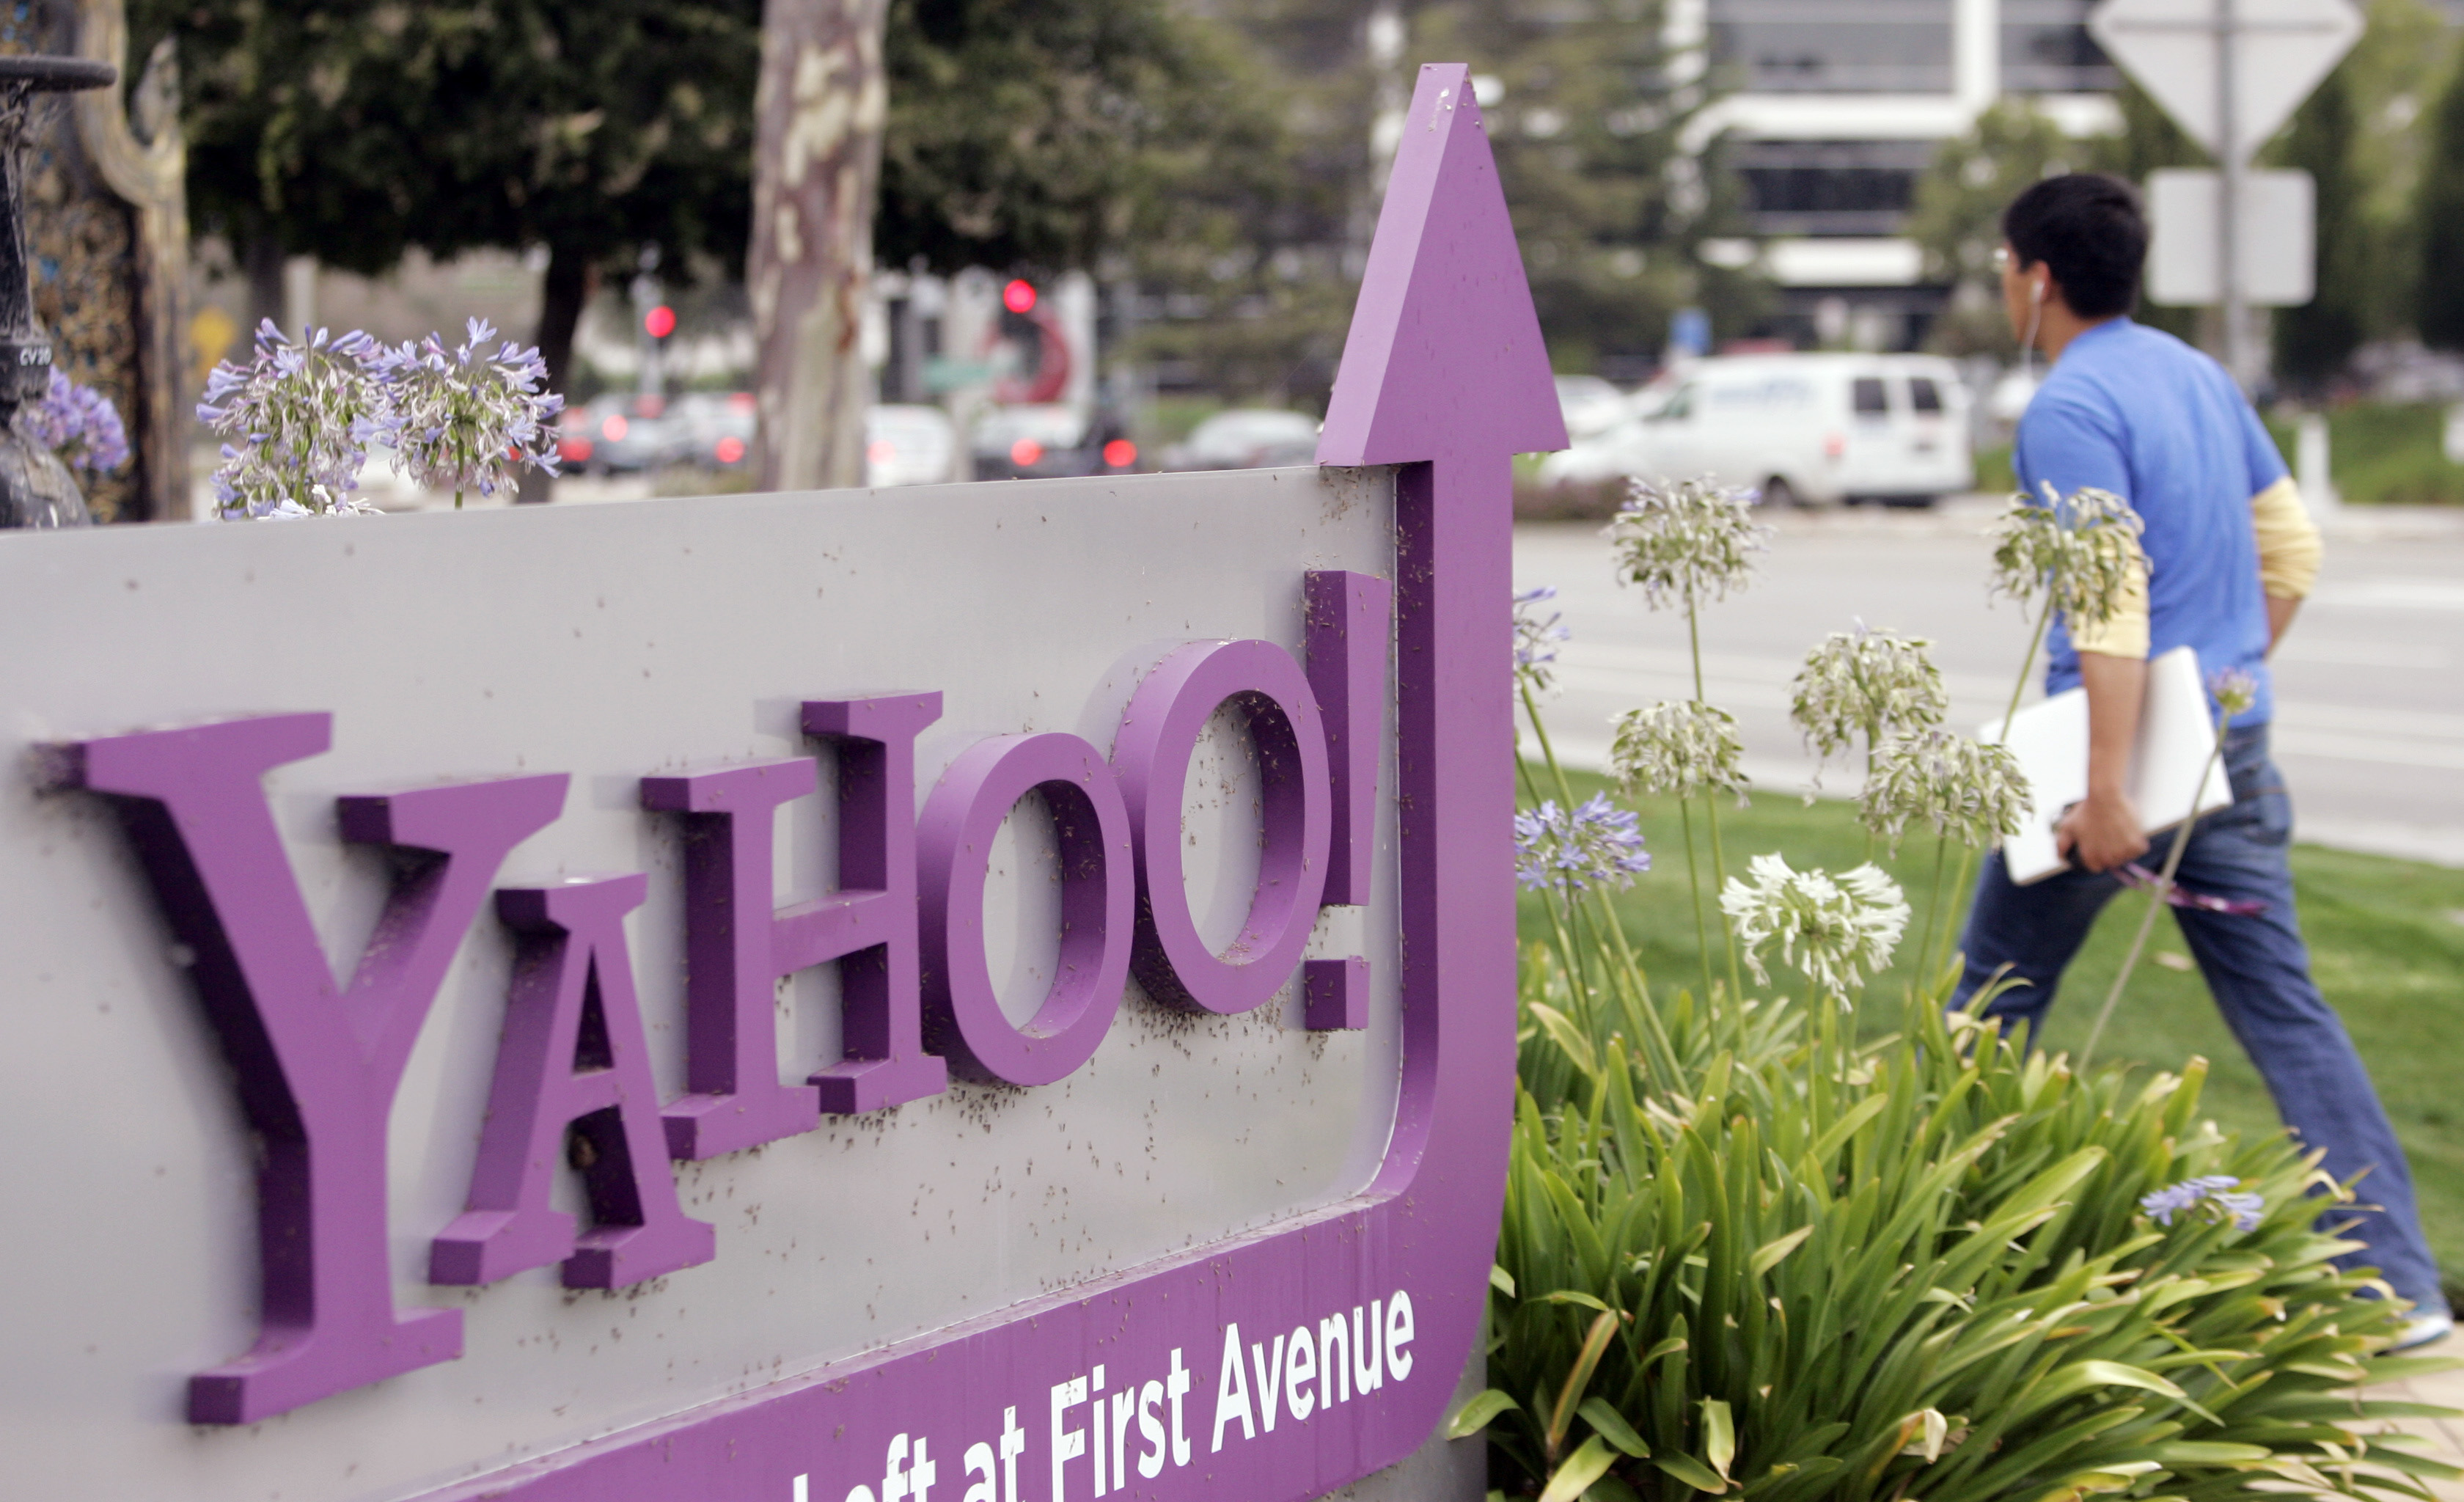 Yahoo sustituye a Google como buscador en Firefox